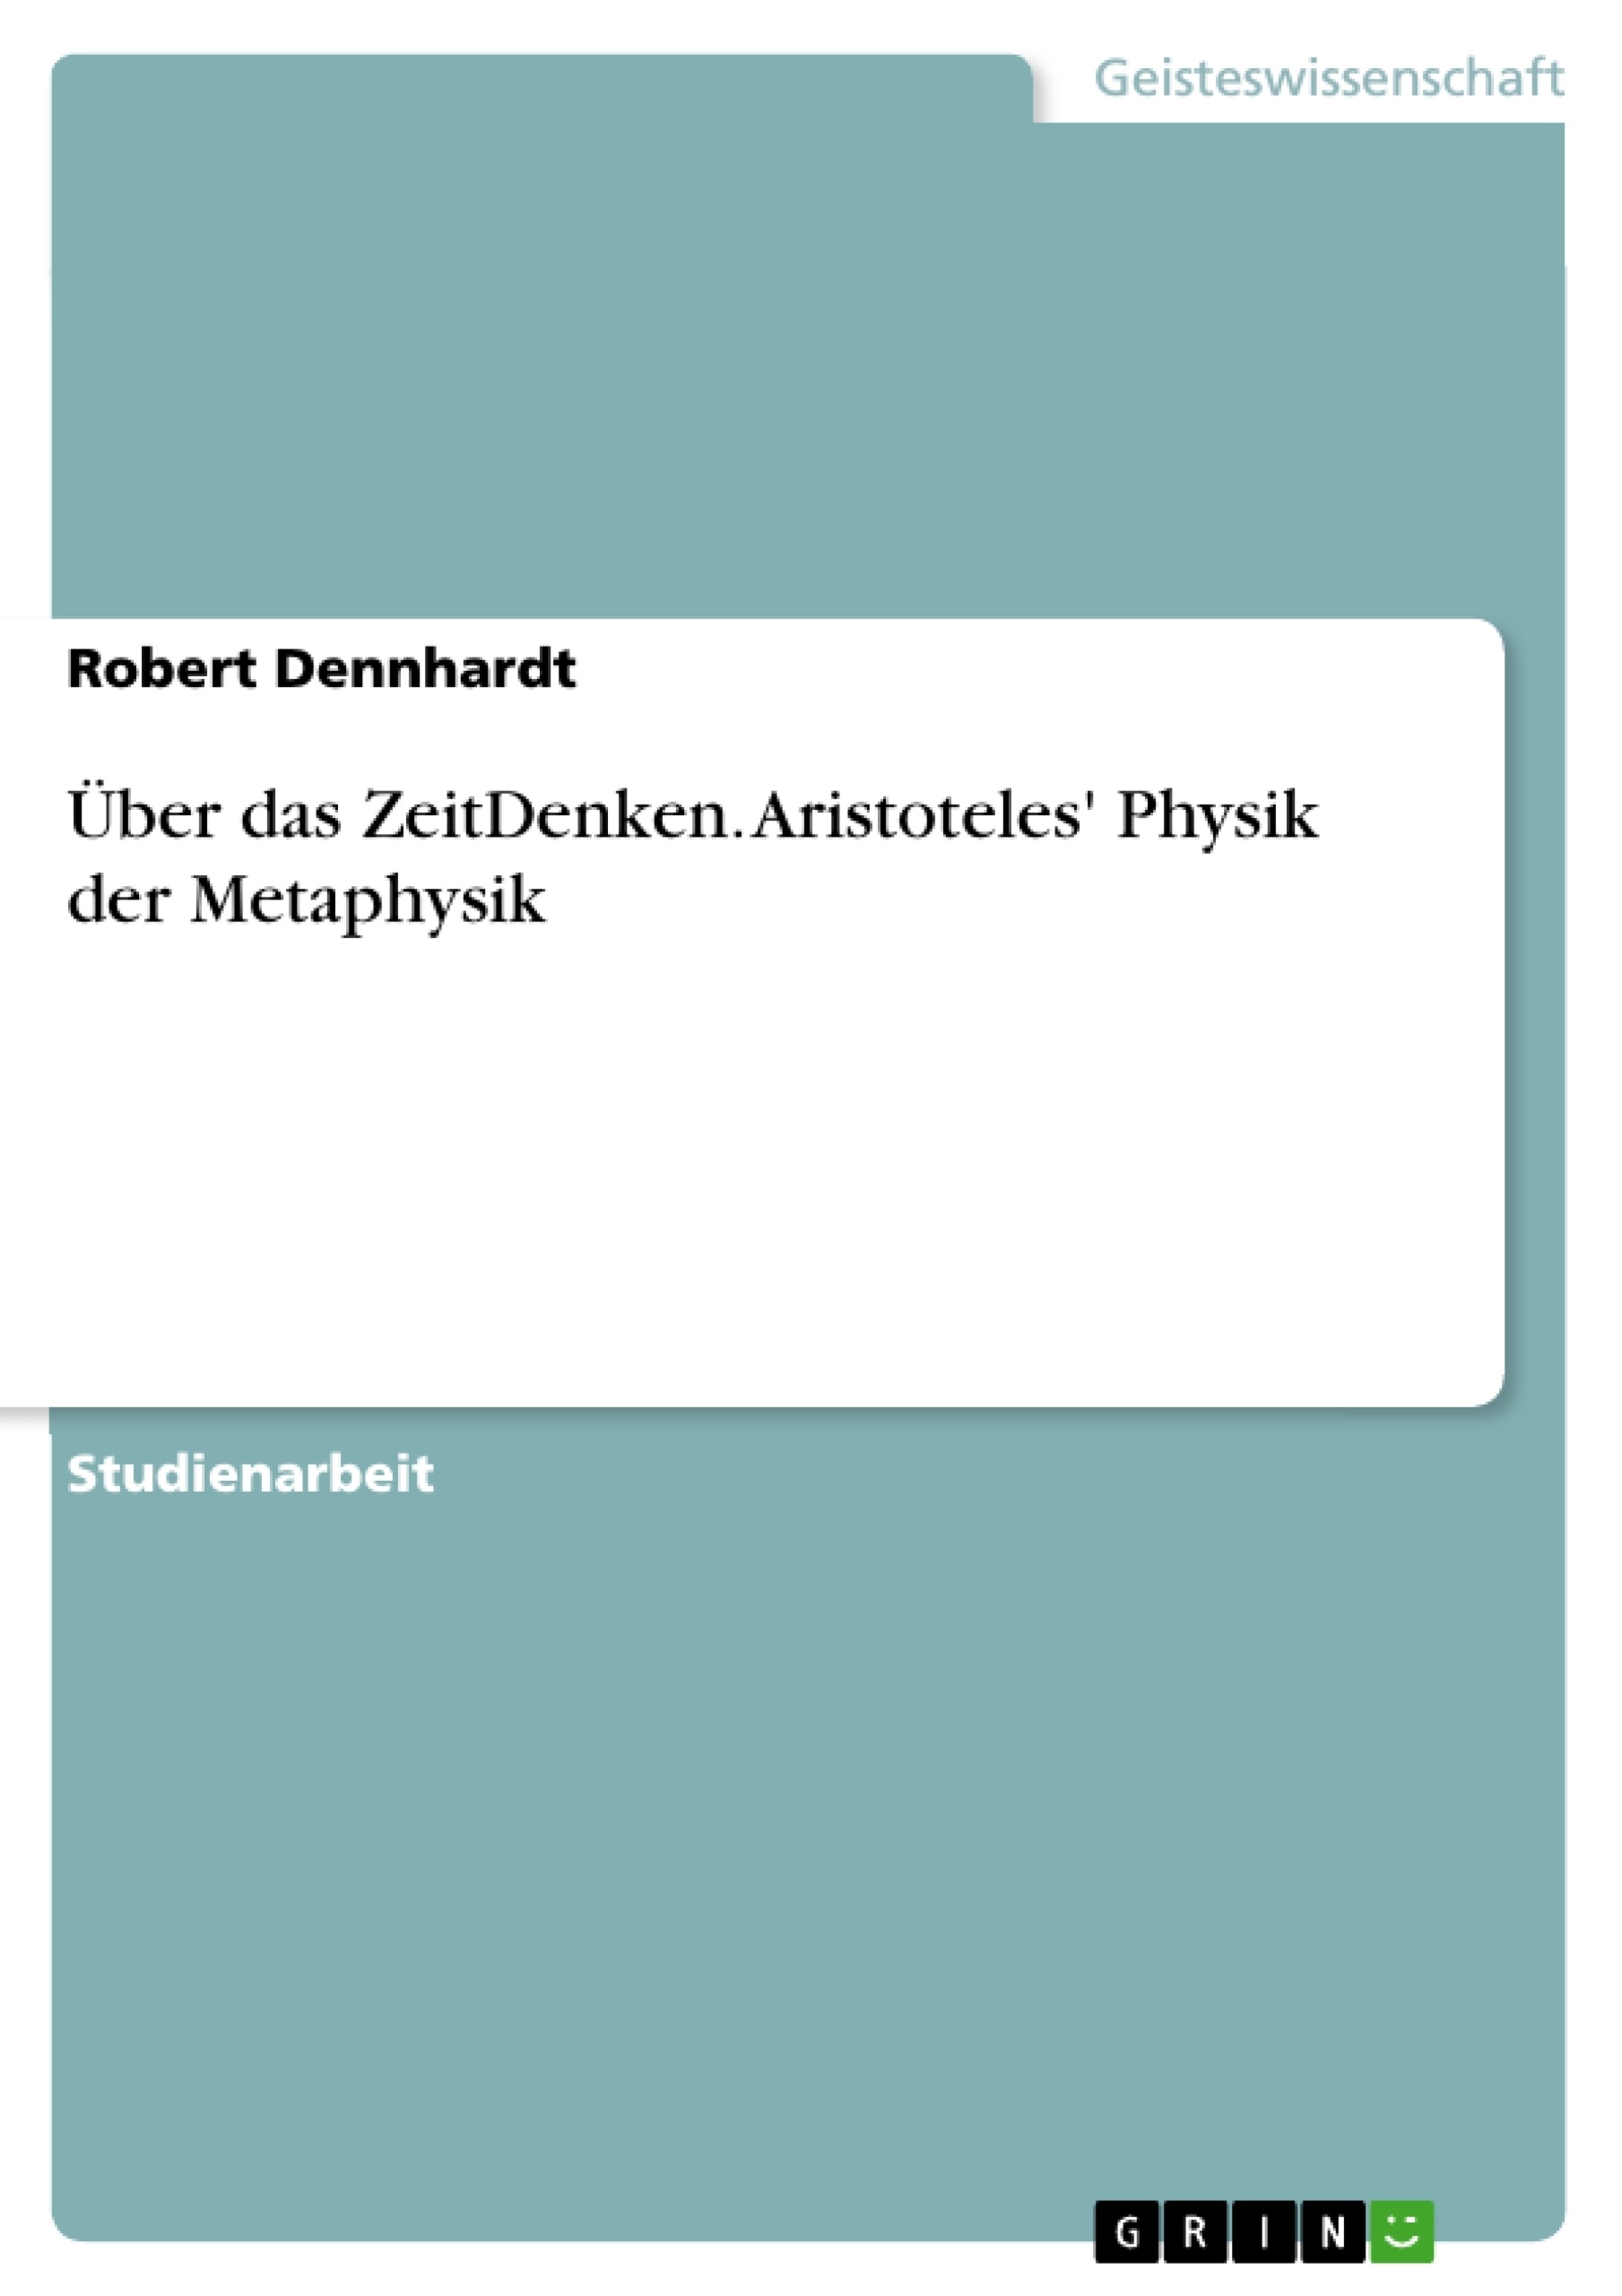 Title: Über das ZeitDenken. Aristoteles' Physik der Metaphysik